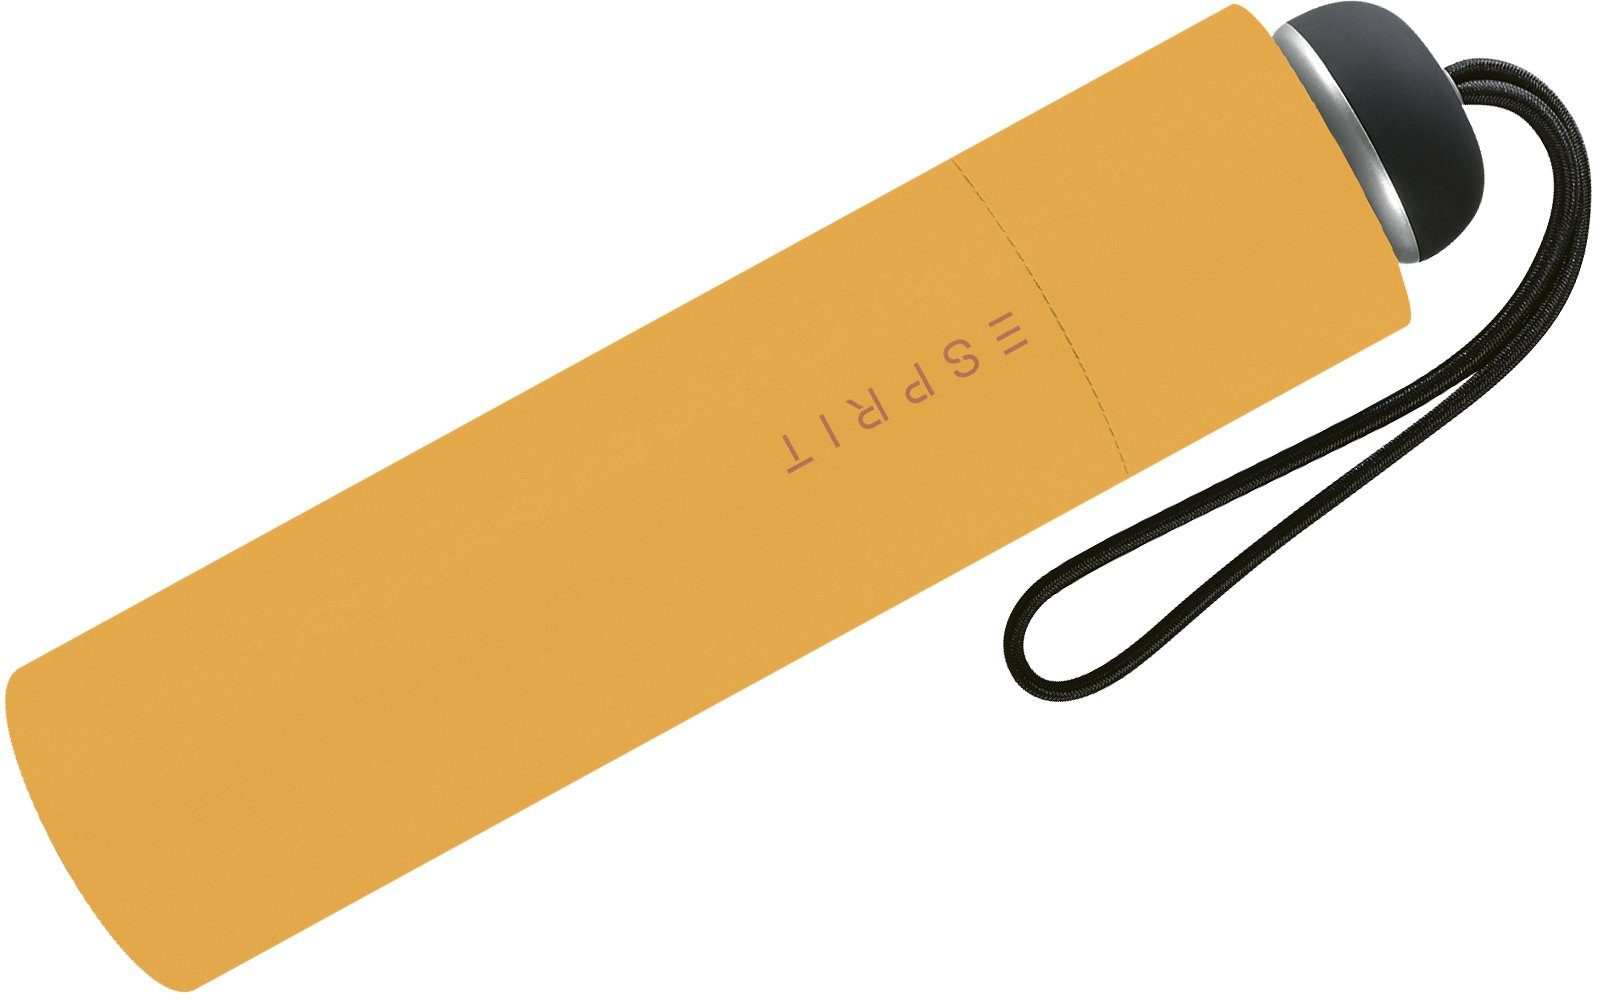 Taschenregenschirm butterscotch gelb handlicher in Esprit Farben - für modischen leichter, Damen, Begleiter Schirm